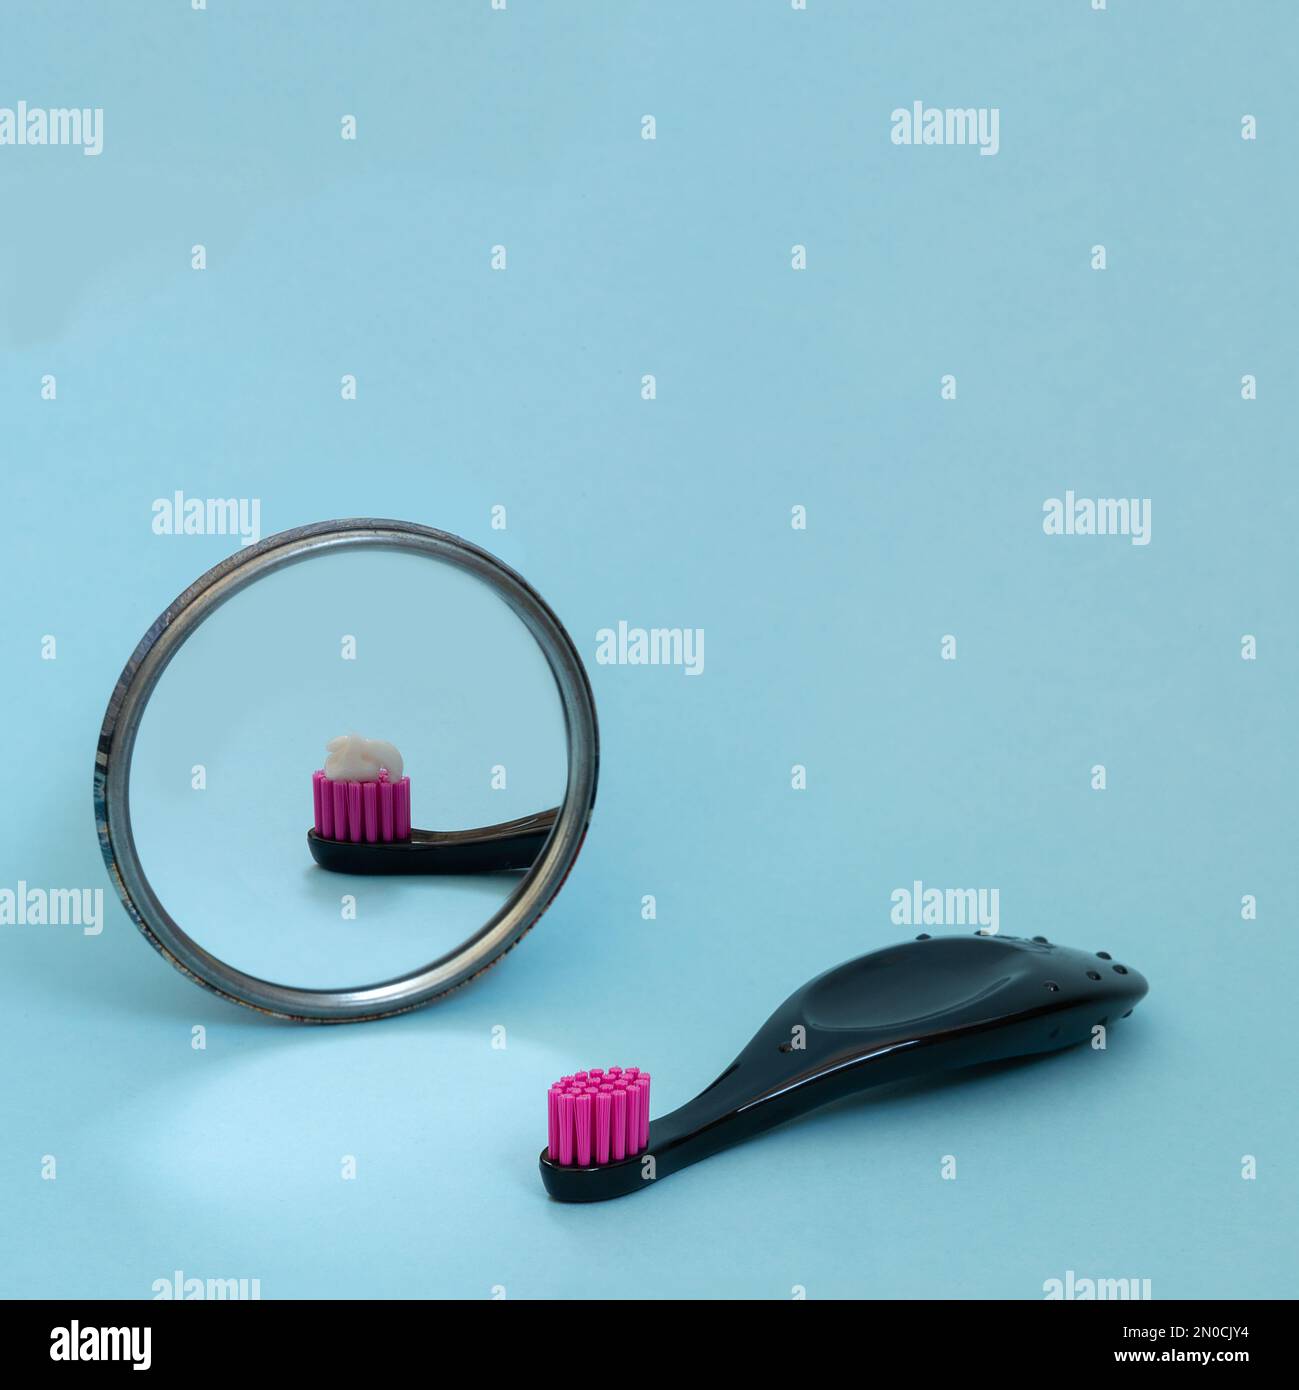 Kinderzahnbürste mit Spiegelreflexion der Zahnpasta. Internationaler Zahnarzttag. Kreatives Konzept der täglichen Morgenroutine. Kopierbereich, quadratisches Format Stockfoto